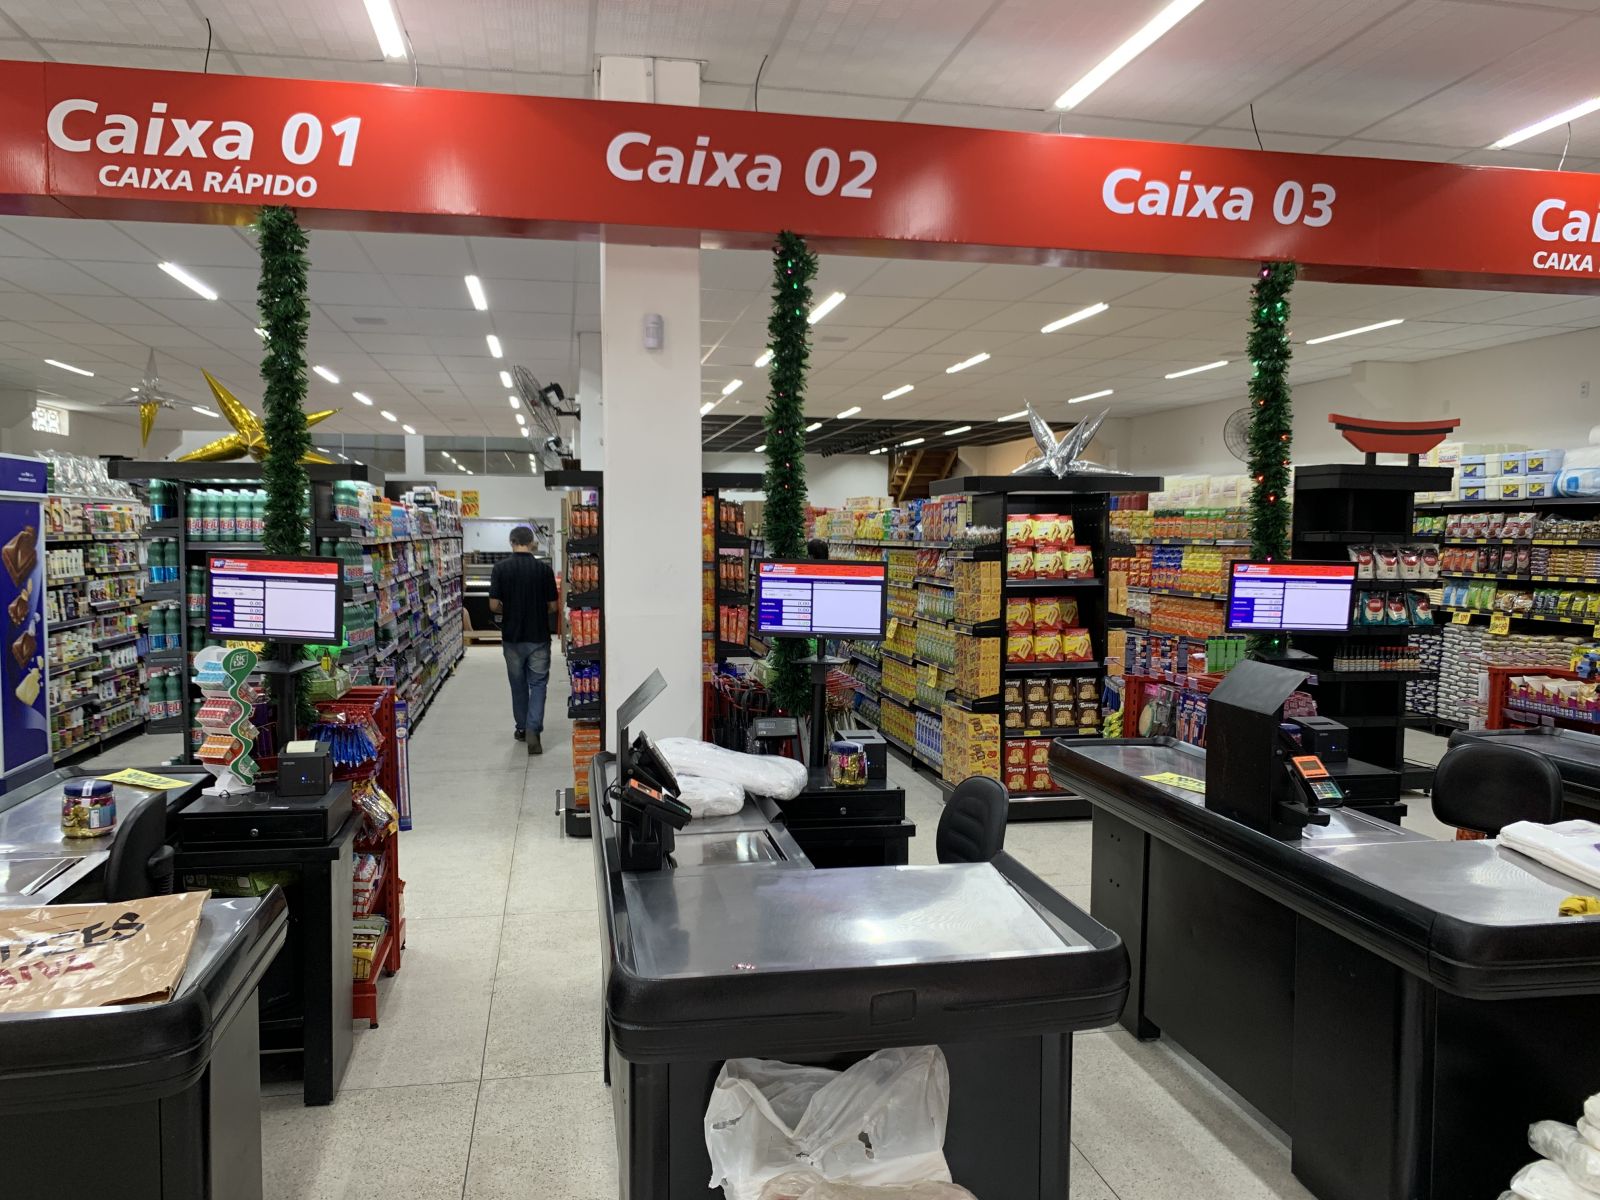 Supermercado Novo Barateiro chega a Carava com loja moderna e mix completo de produtos. (Foto: Alex Gonalves/BAHIA DIA A DIA)